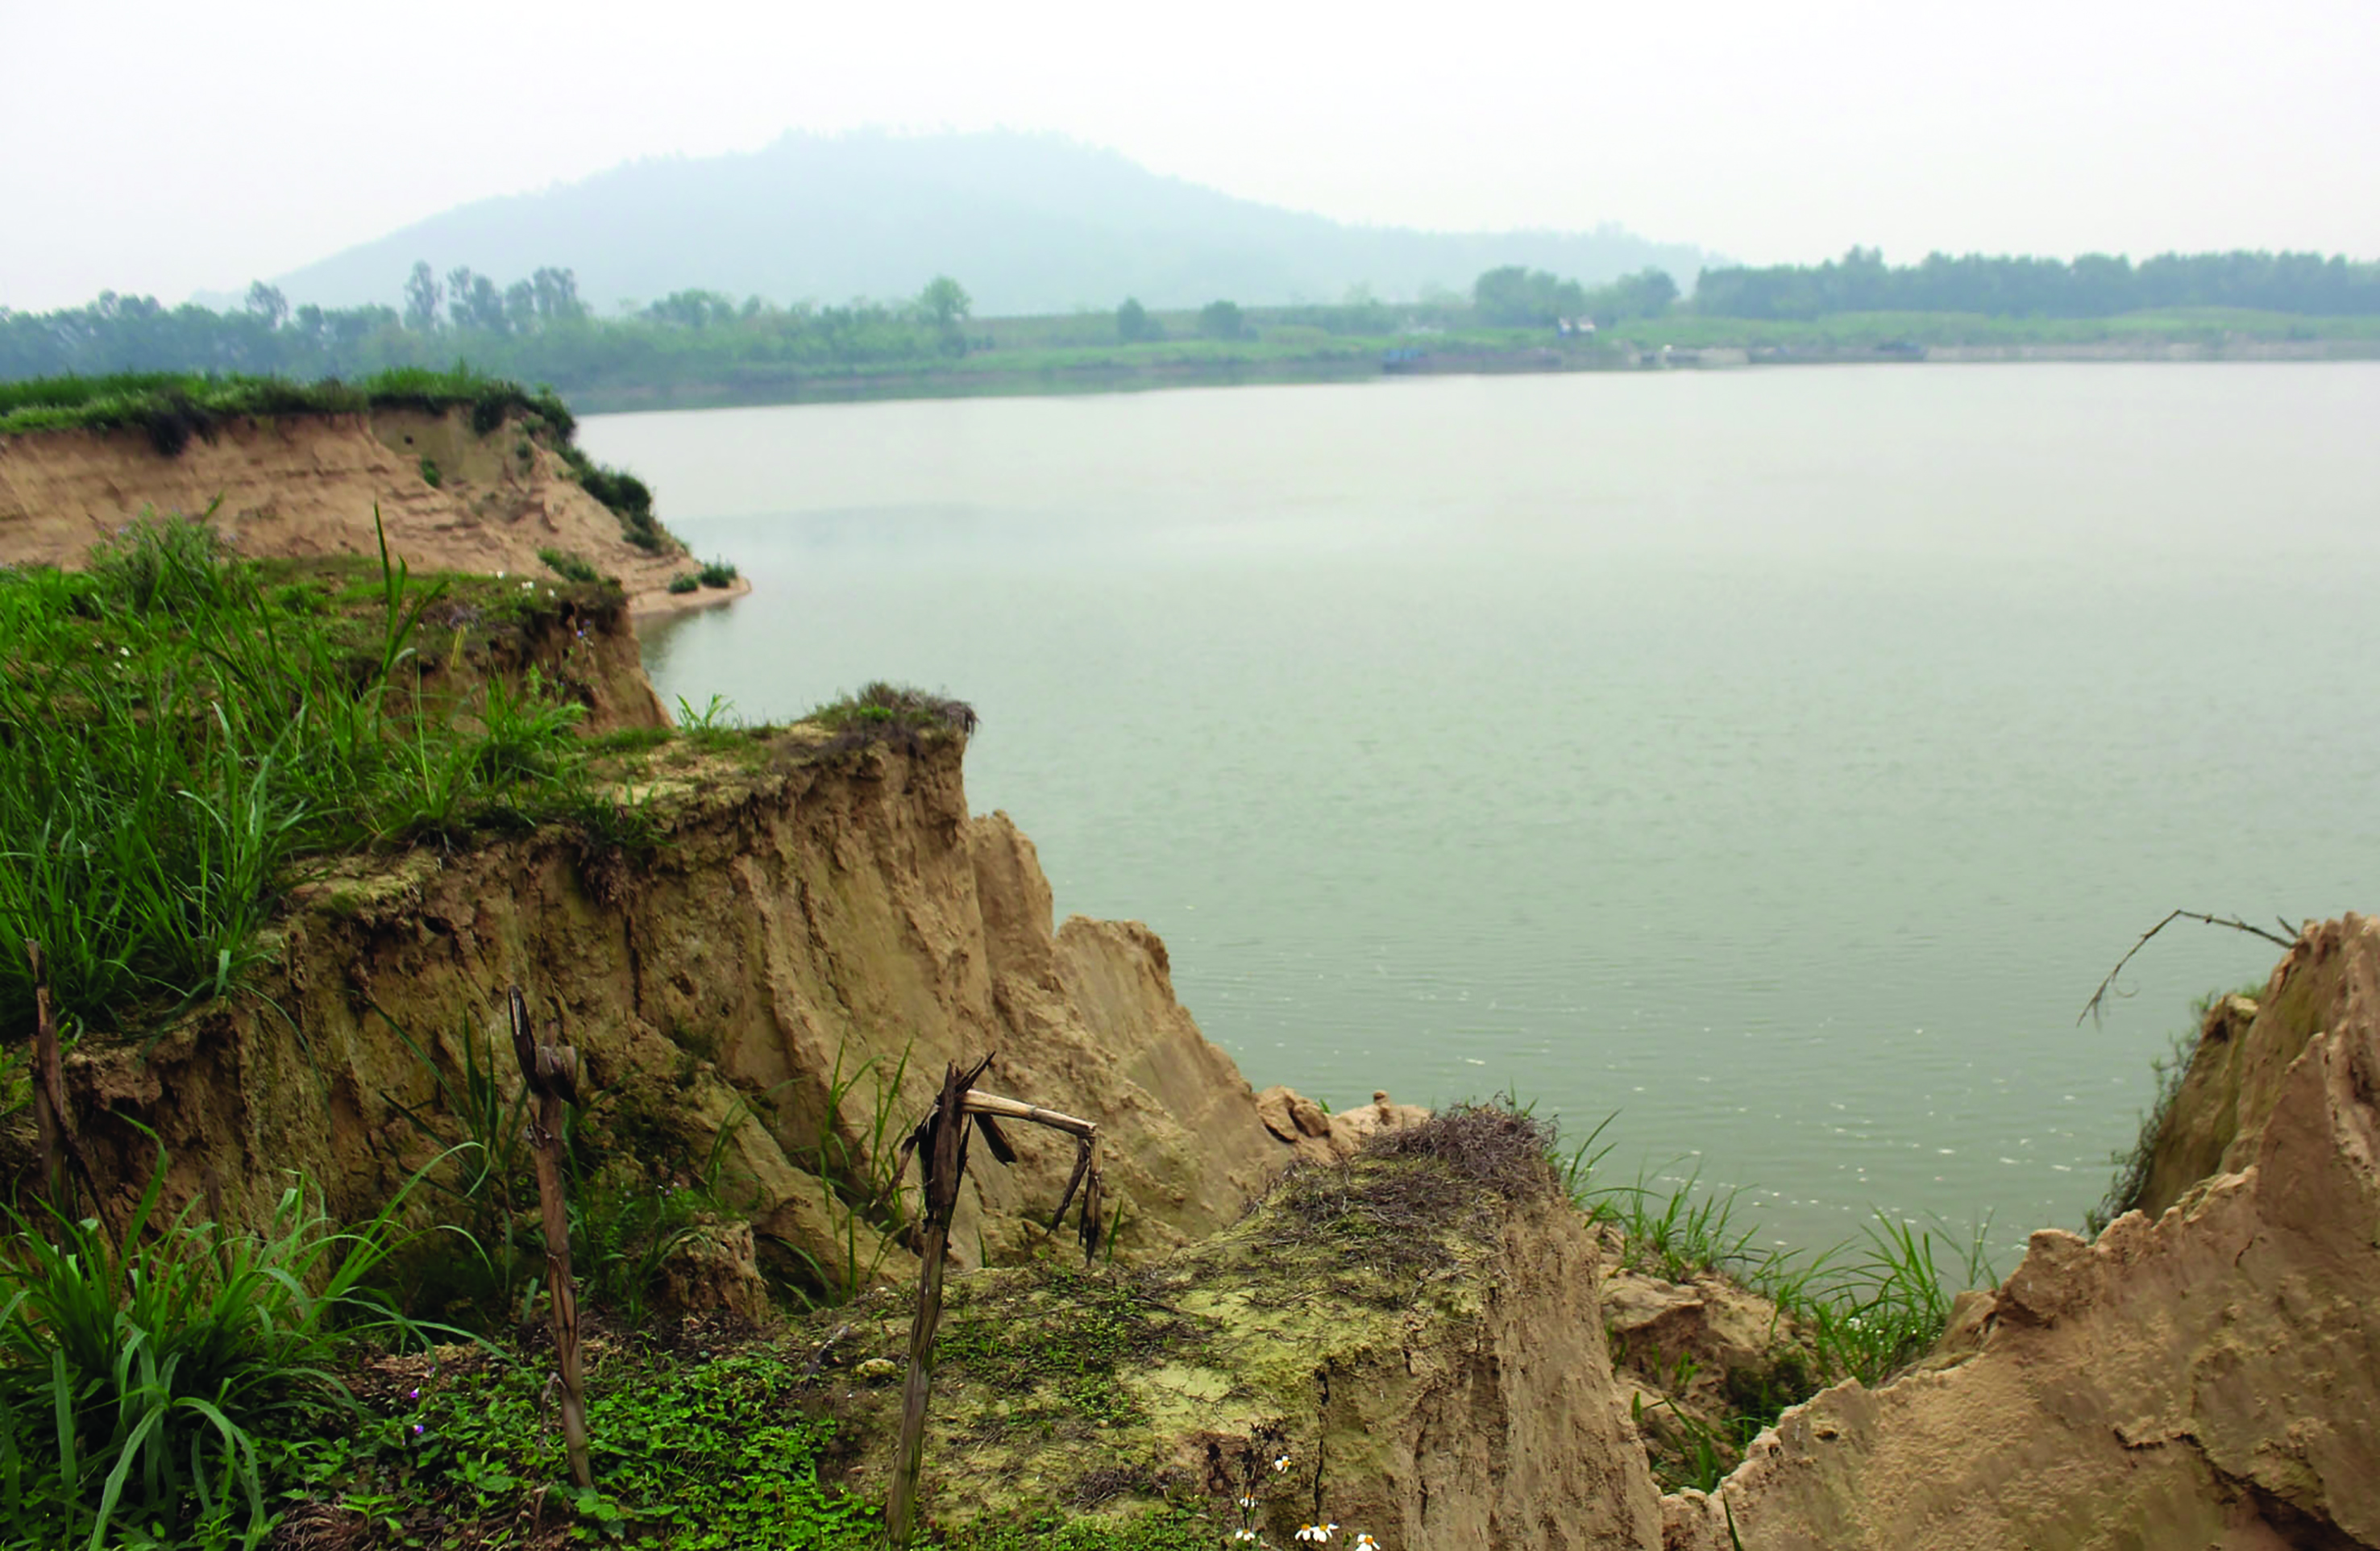 Khai thác cát đã làm gần 12 ha đất bãi của xã Thiệu Nguyên bị cuốn xuống sông Chu - Ảnh: Ngọc Minh